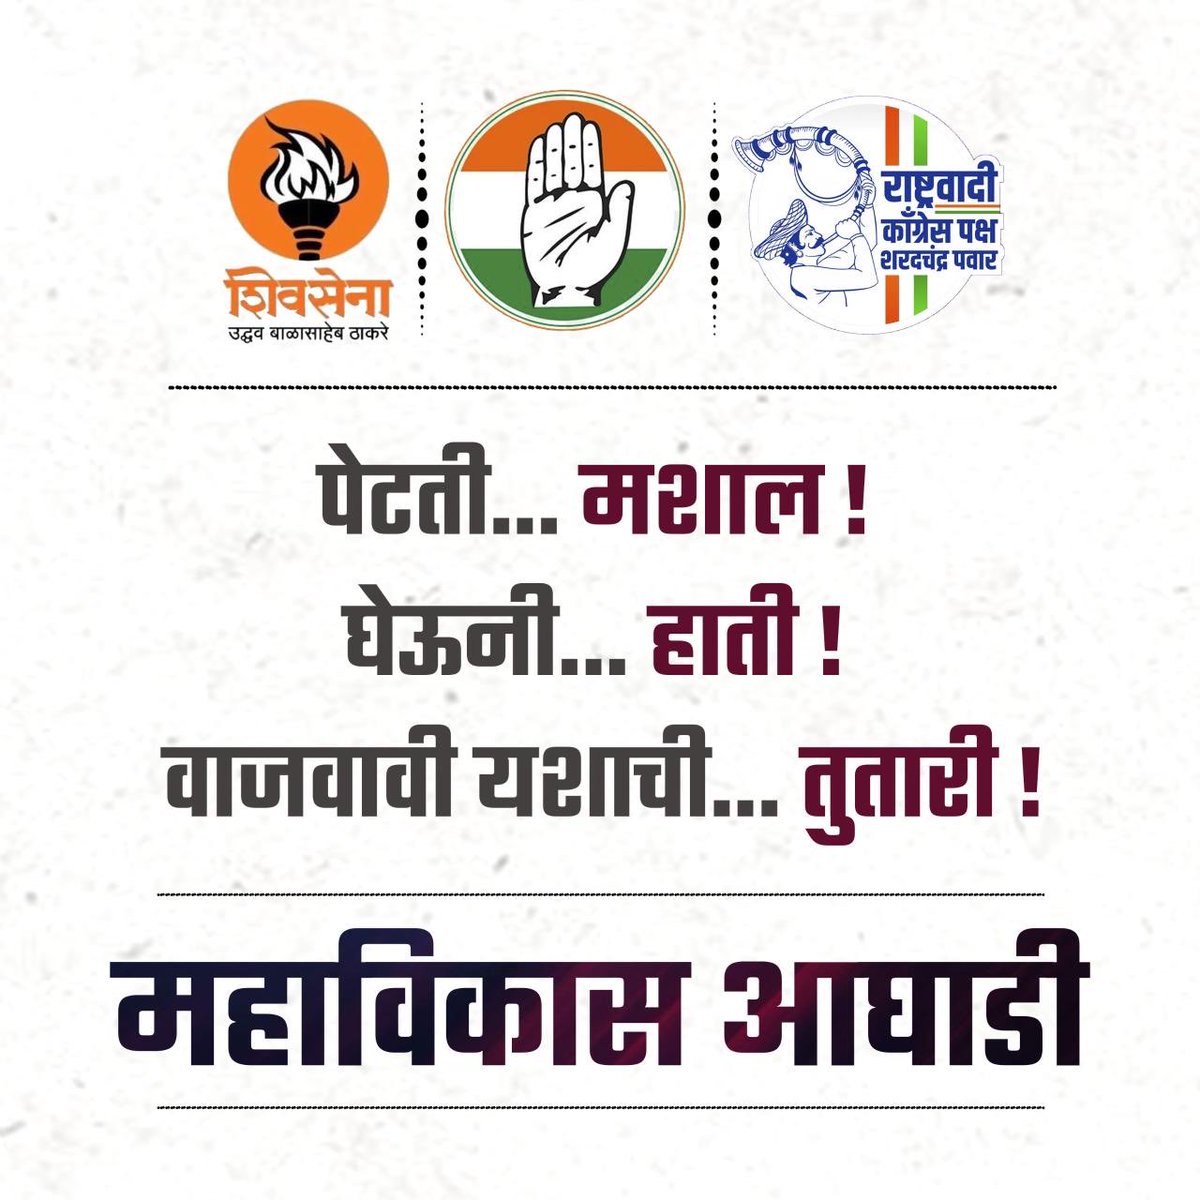 लोकशाही आणि महाराष्ट्राला वाचवण्यासाठी चला देऊ महाविकास आघाडीला साथ...
#Congress 
#NCP_SP 
#ShivsenaUddhavBalasahebThackeray